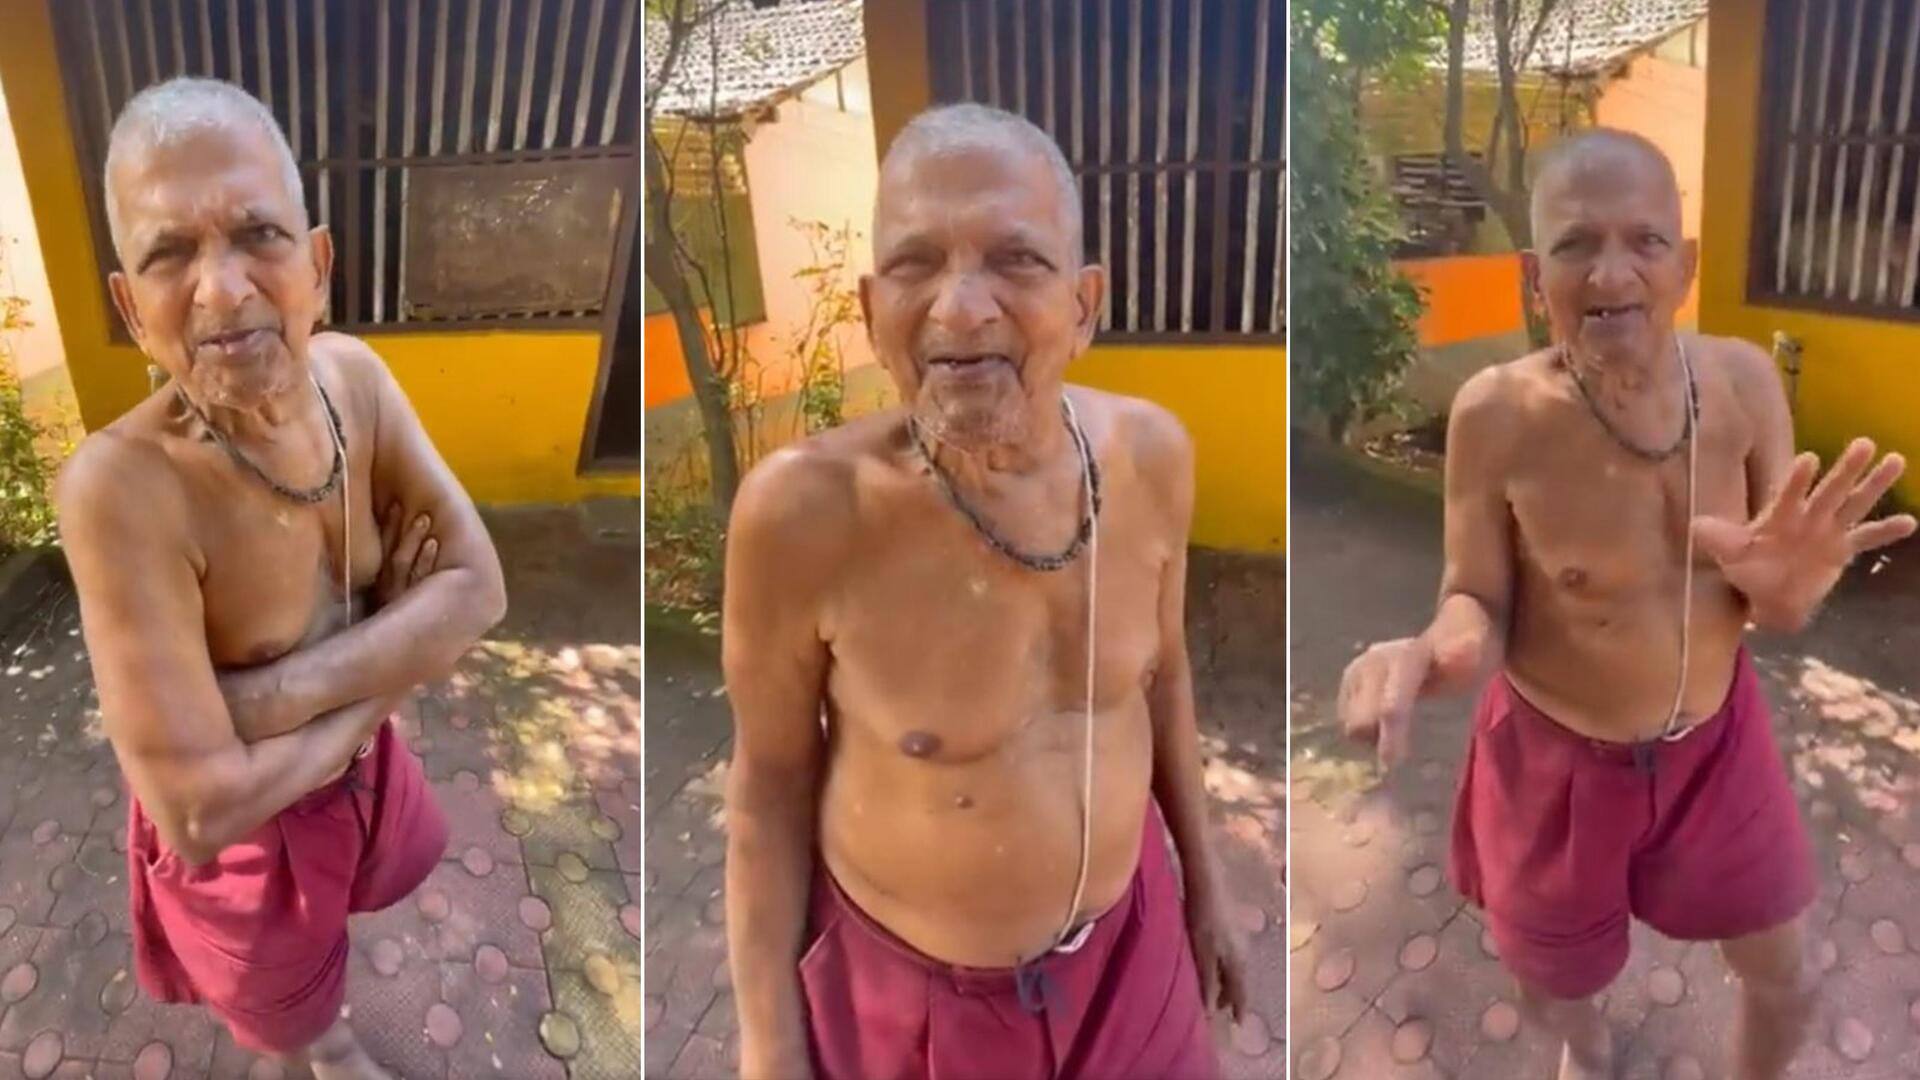 करोड़ों की संपत्ति होने के बावजूद सादा जीवन जीता है यह बुजुर्ग, देखिए वायरल वीडियो